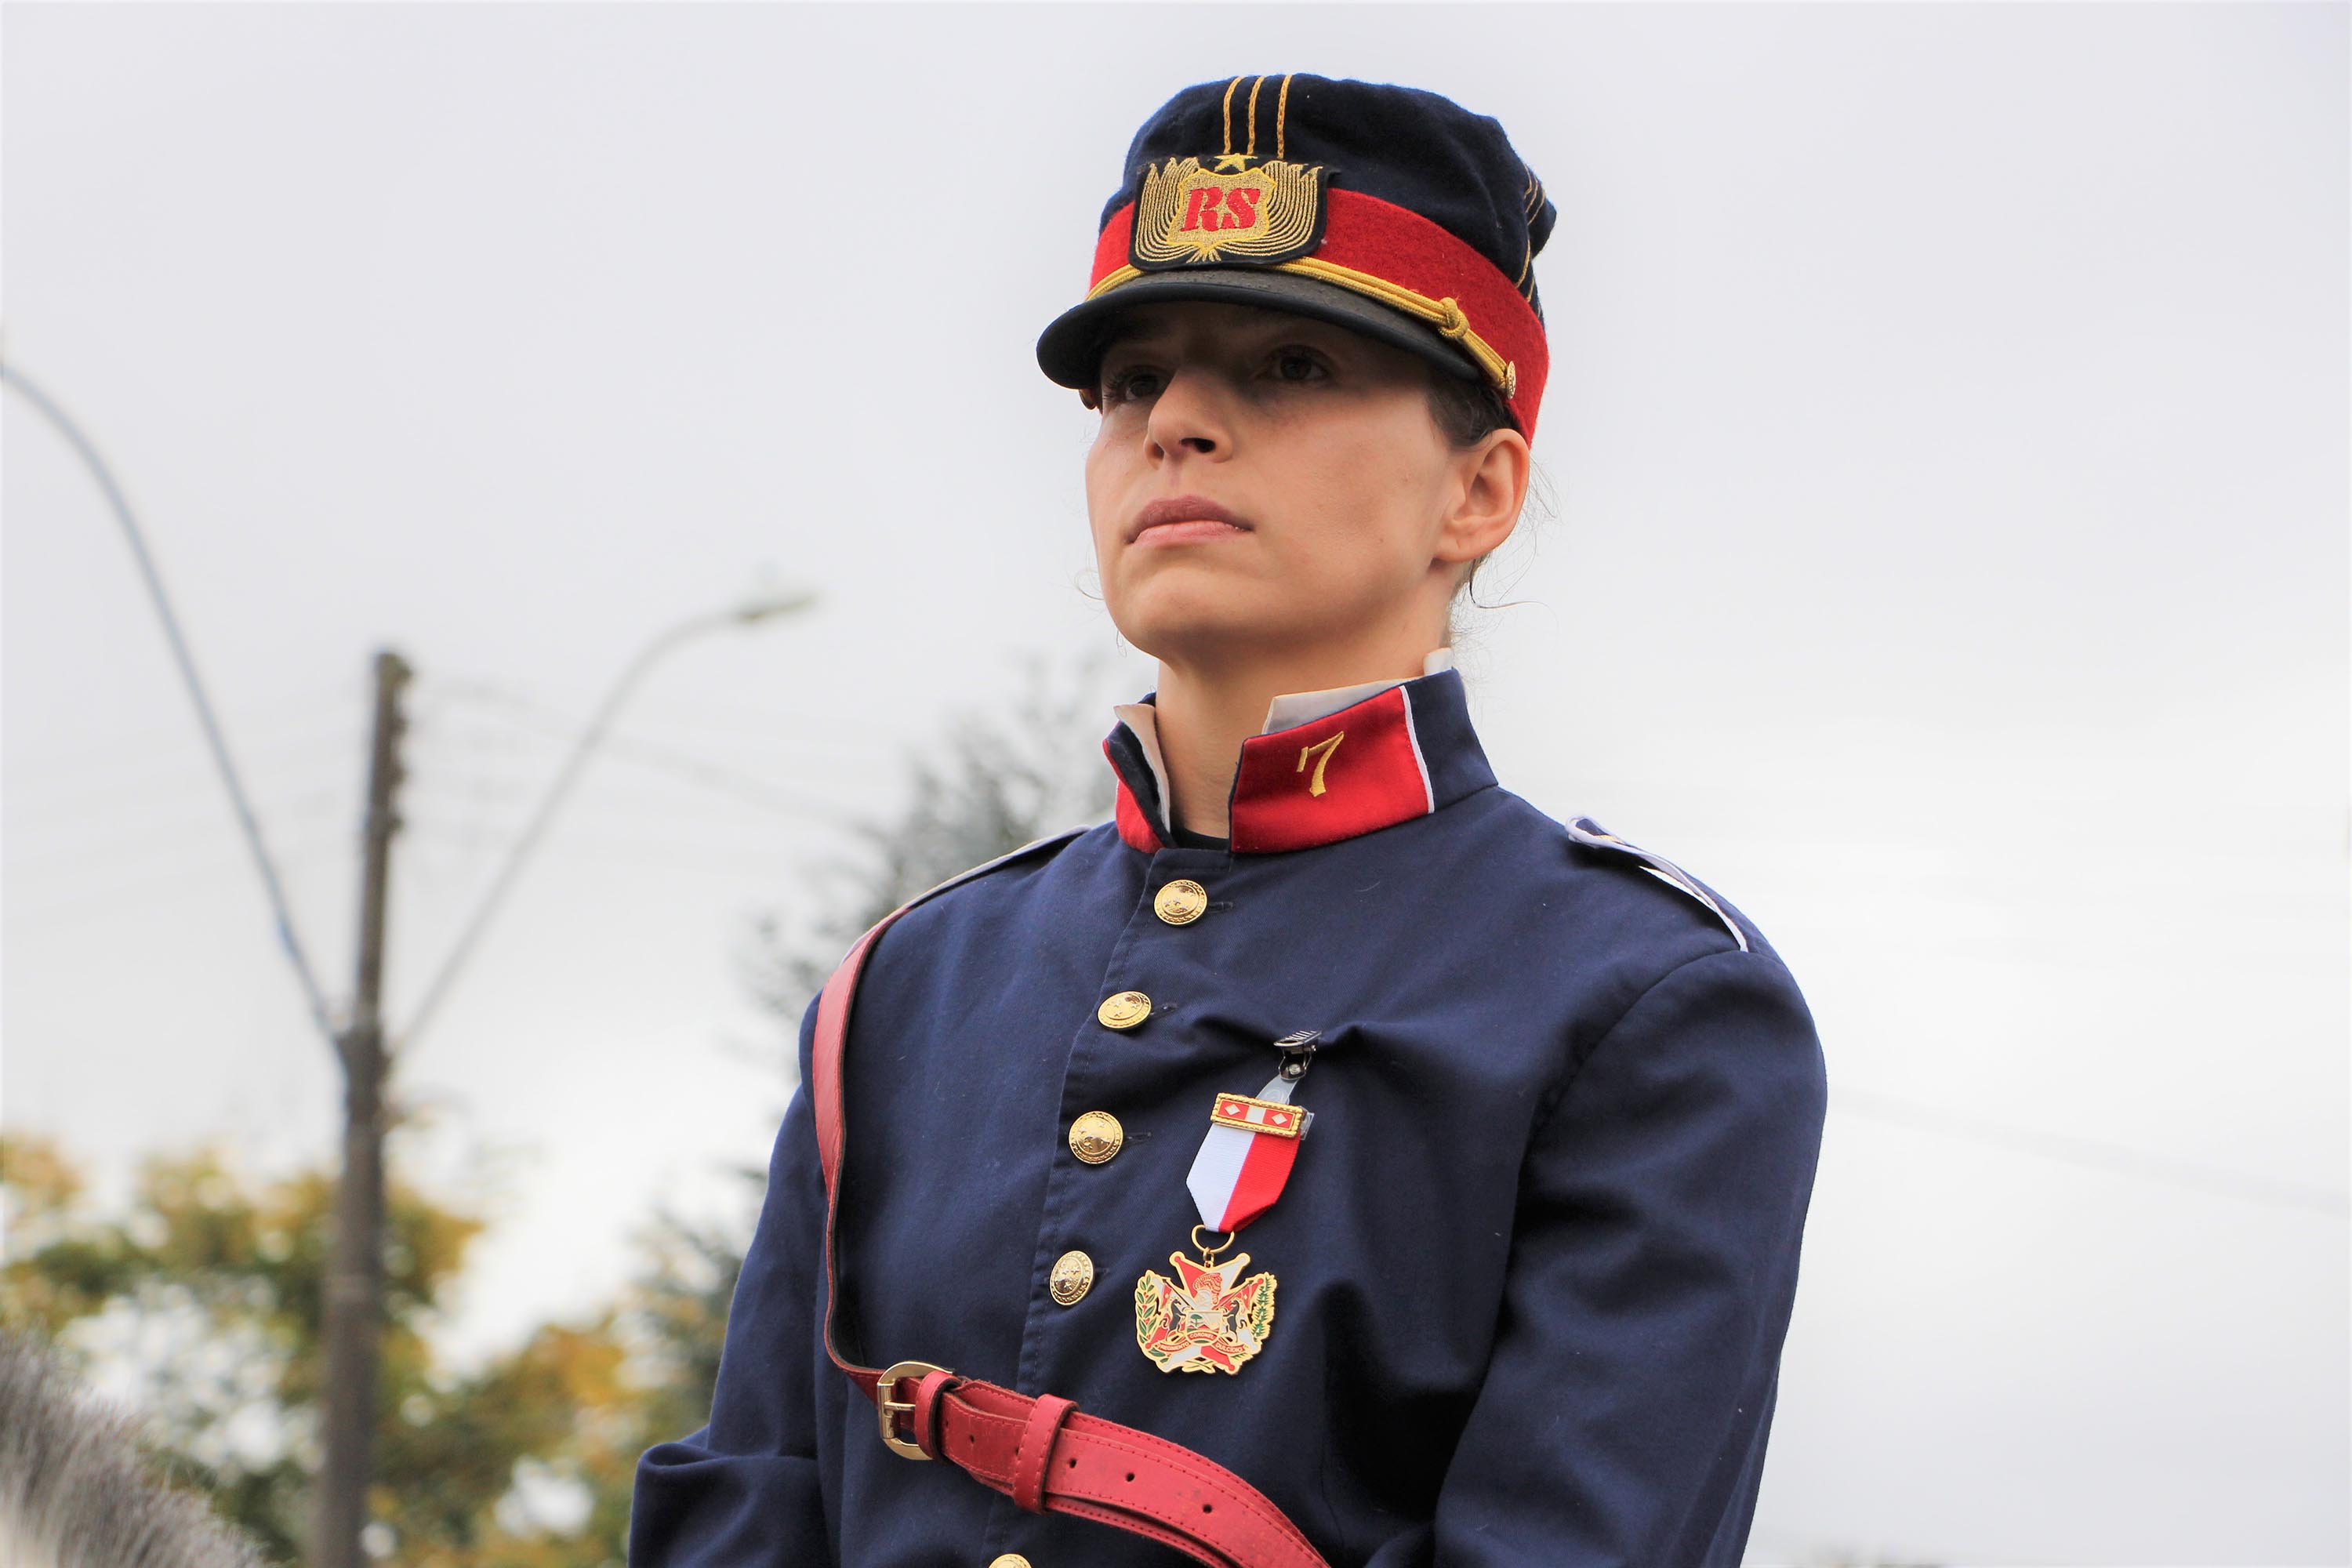 Polícia Militar do Distrito Federal - Sempre haverá uma Cavalaria:  Regimento de Polícia Montada completa 38 anos